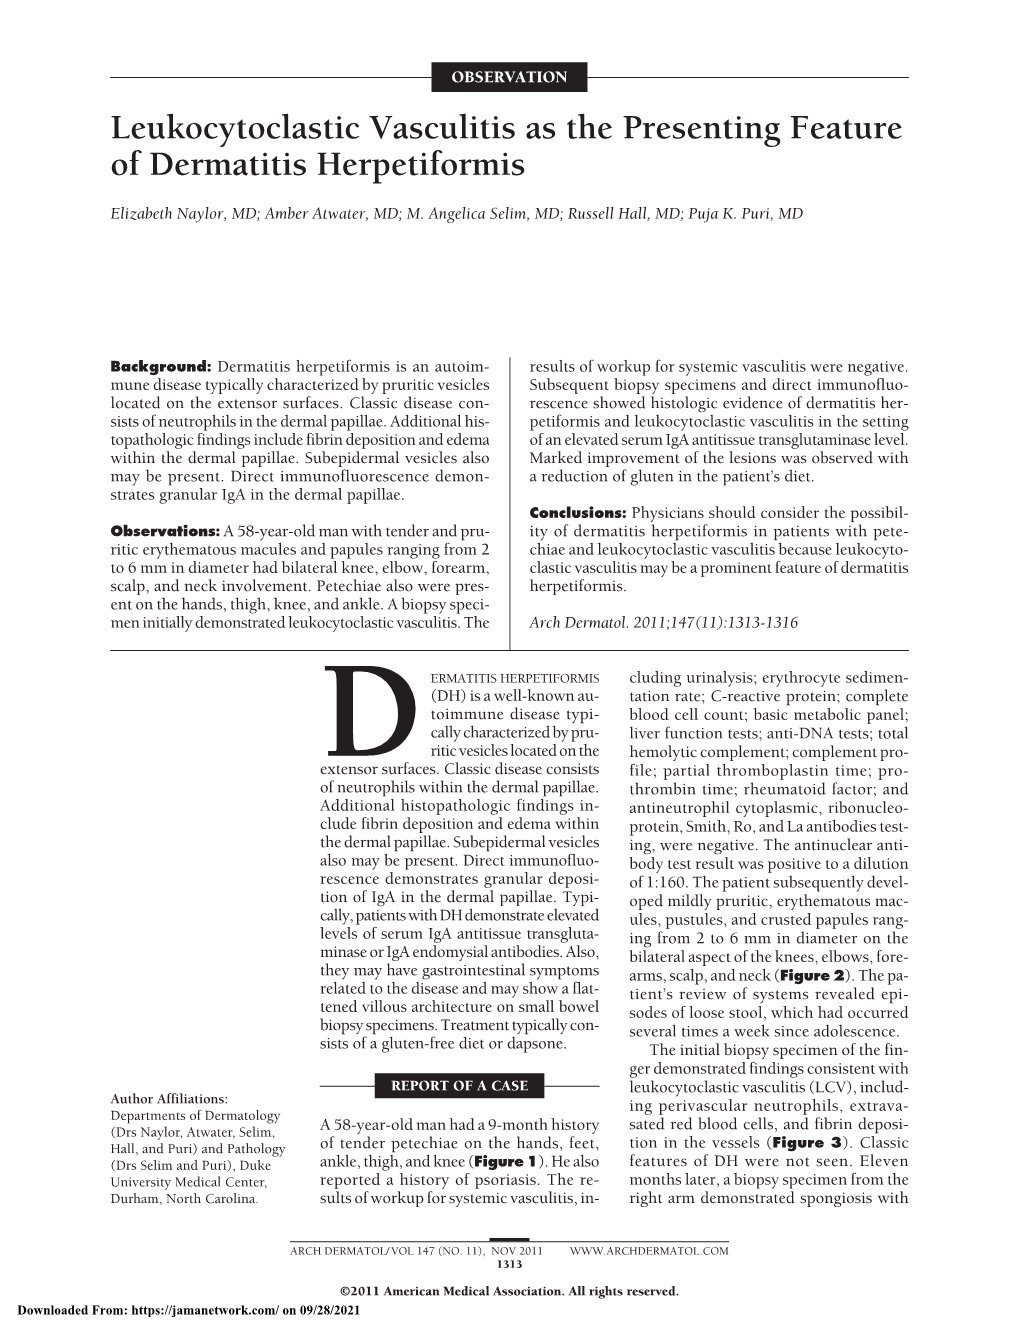 Leukocytoclastic Vasculitis As the Presenting Feature of Dermatitis Herpetiformis